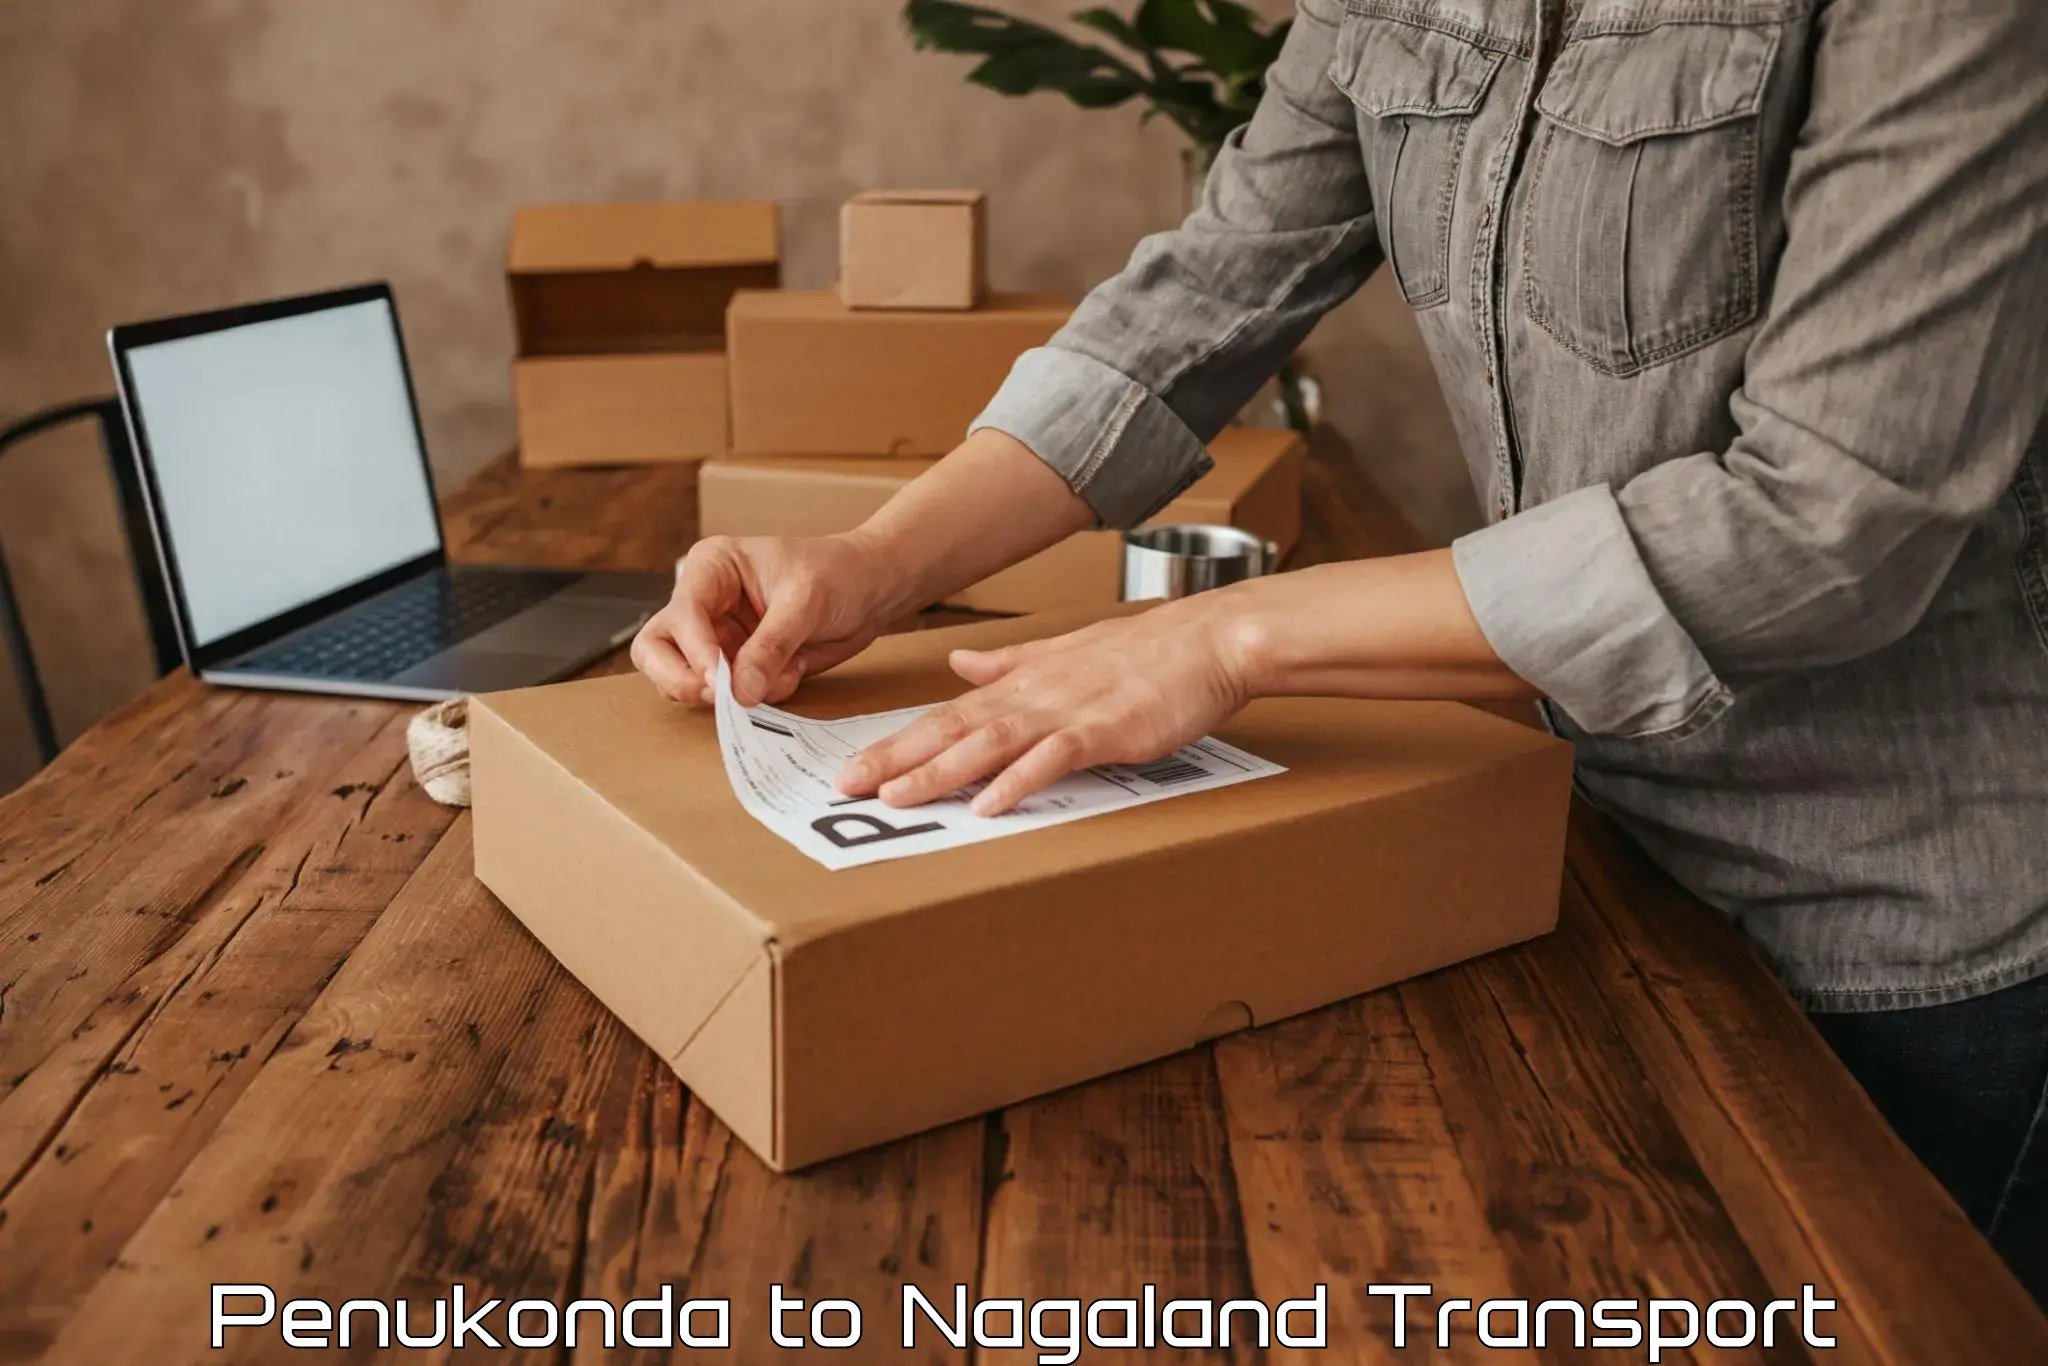 Transport in sharing Penukonda to Longleng